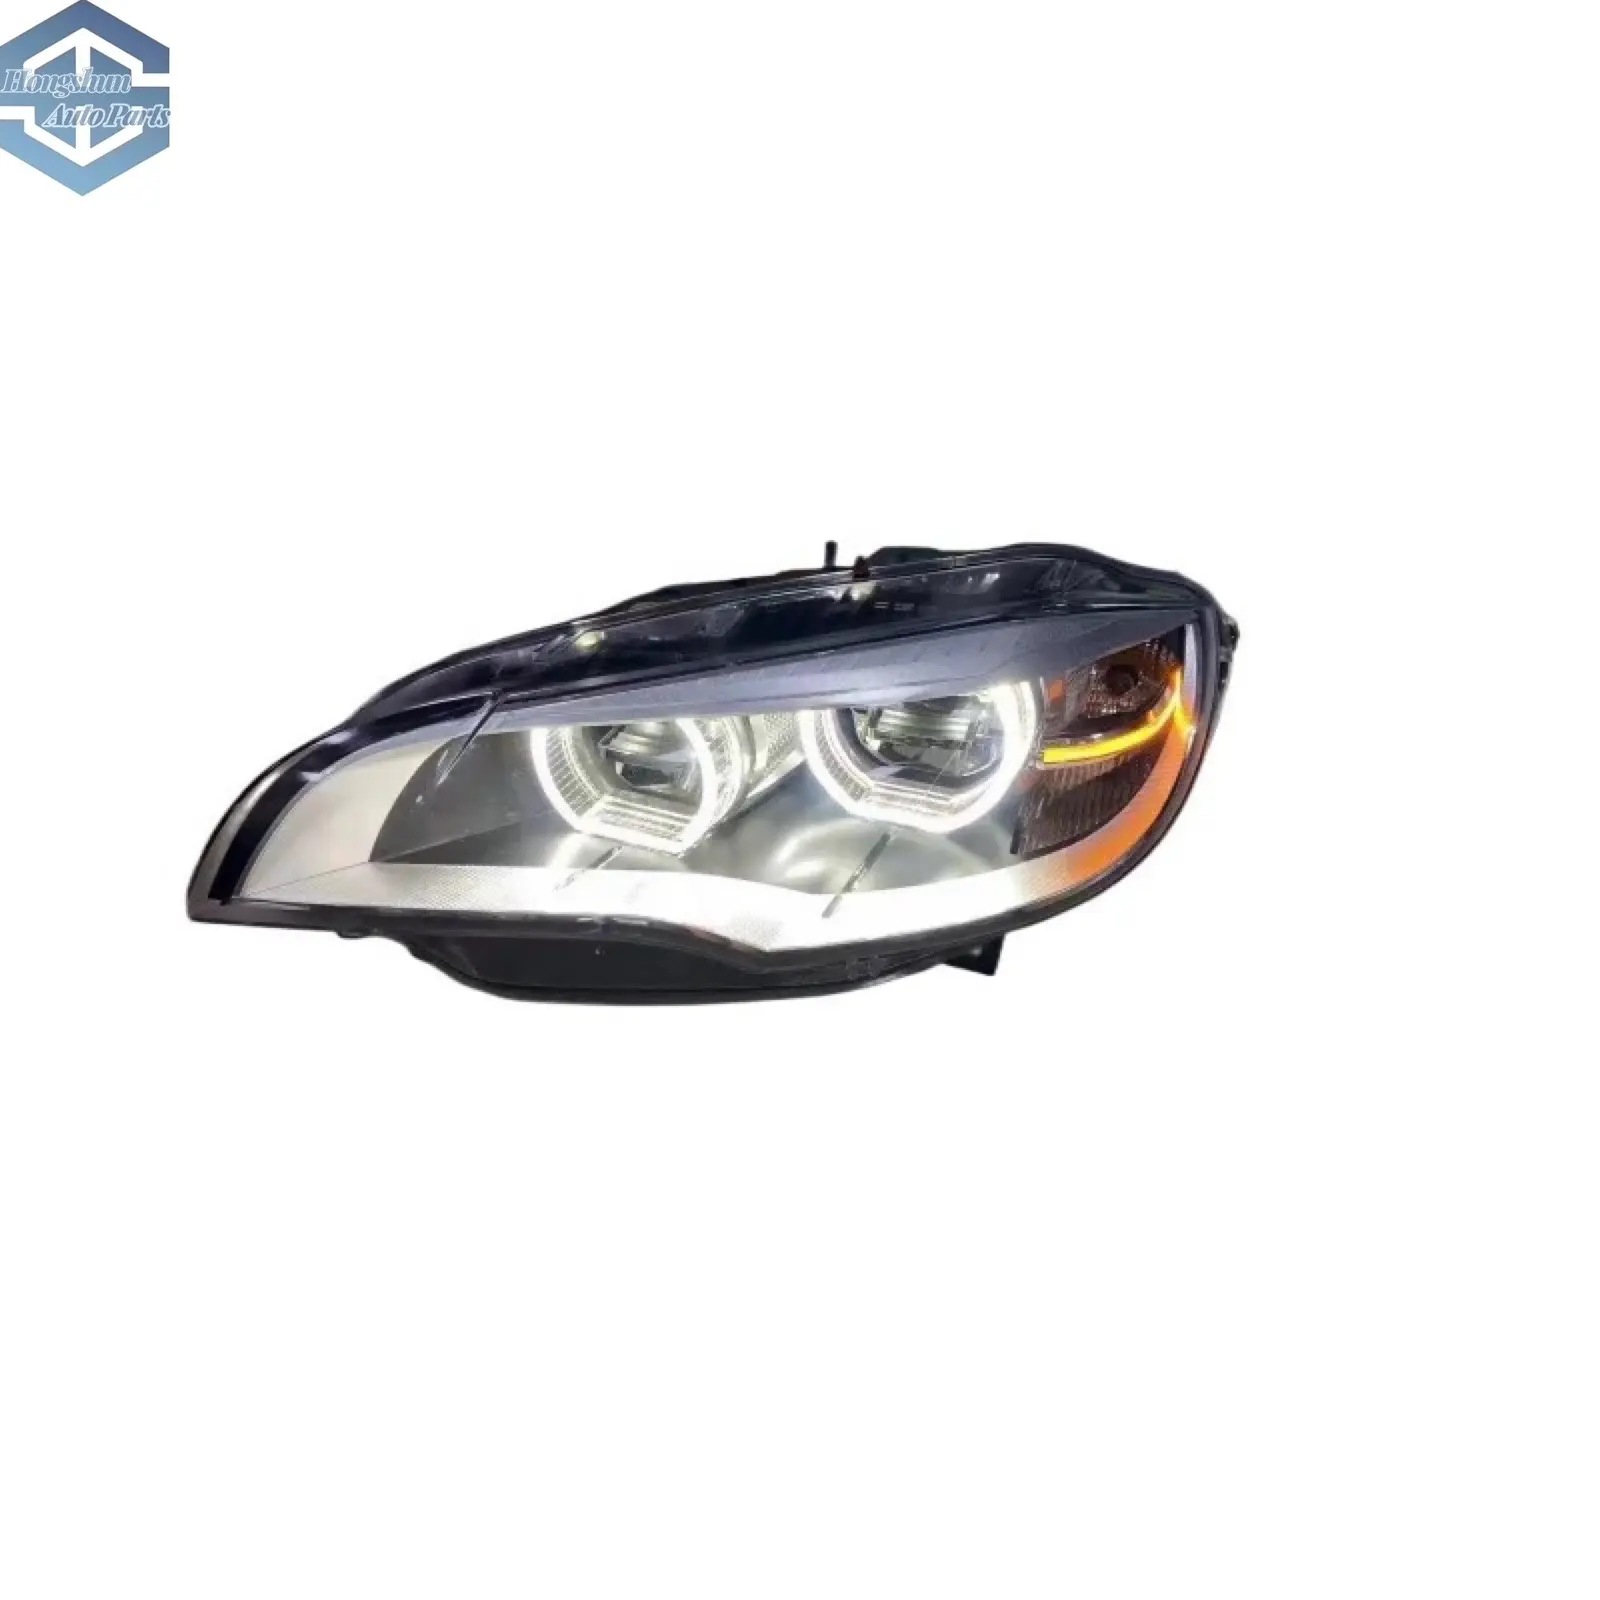 Hochwertiges neues Design X6 E71 LED-Scheinwerfer Laser version Scheinwerfer für BMW Beleuchtungs system